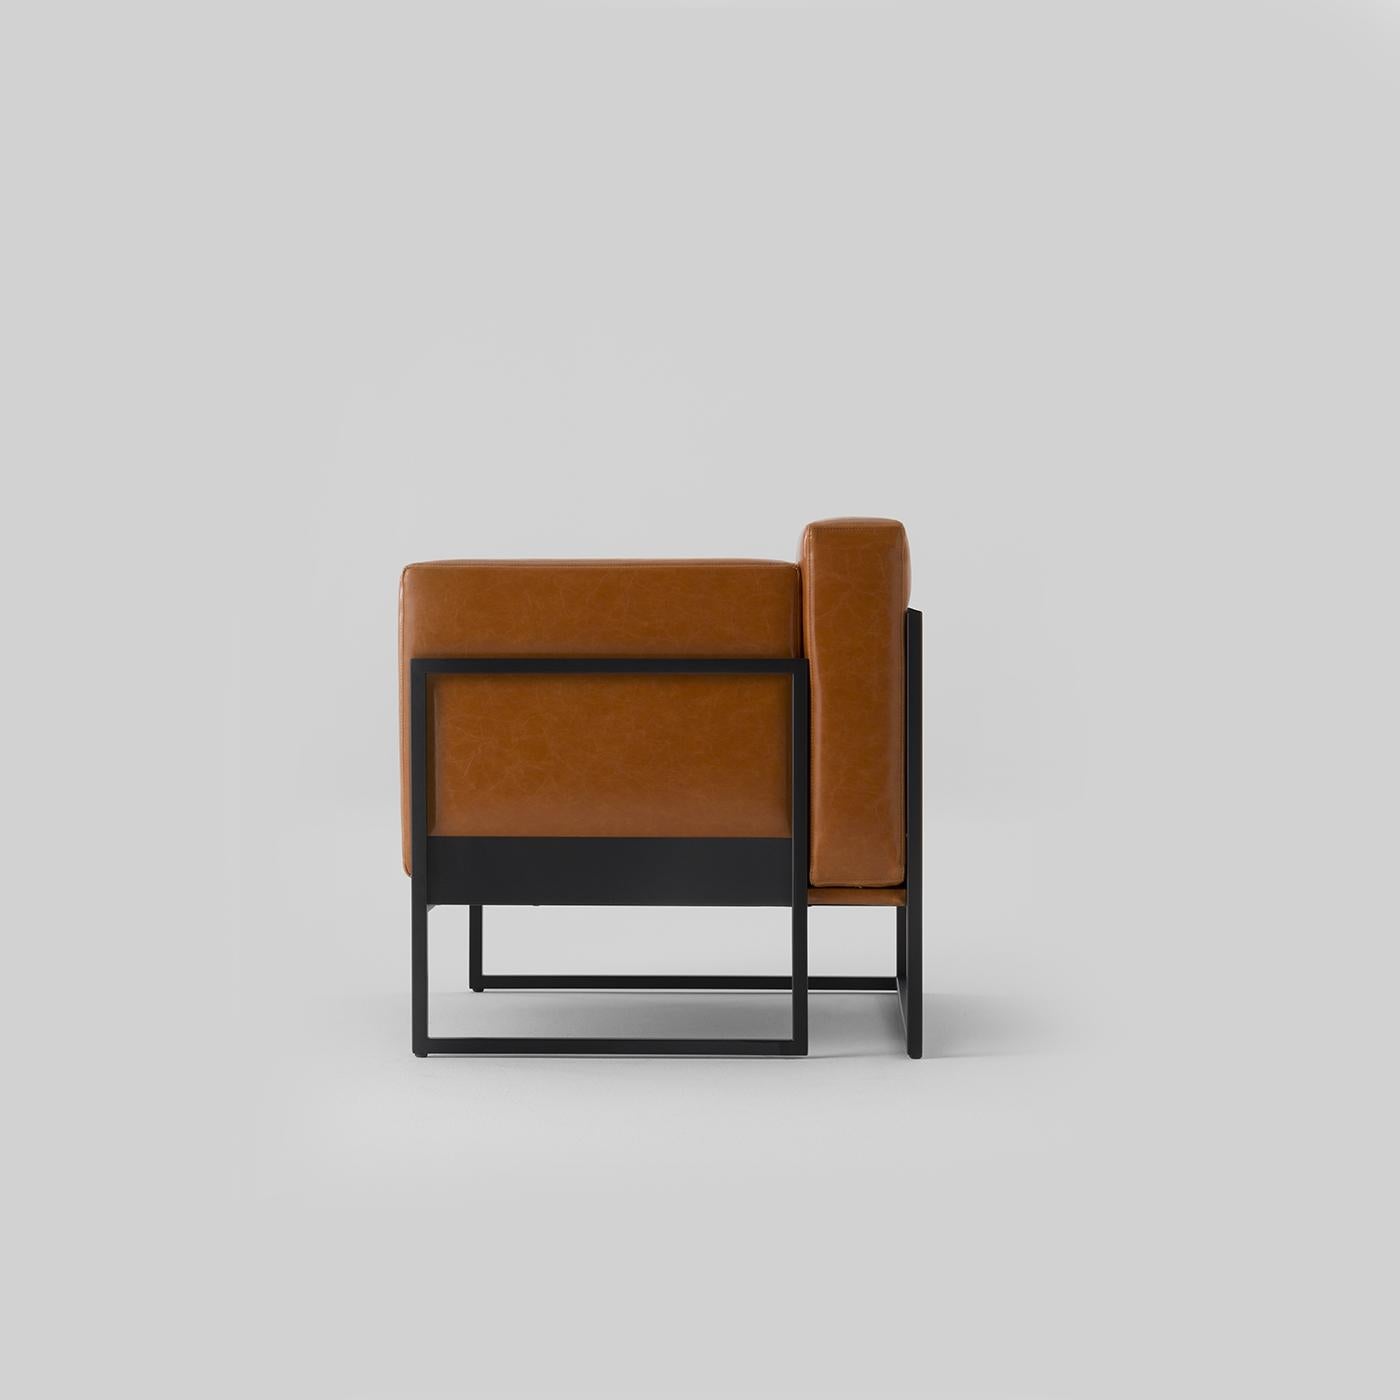 Des lignes épurées et essentielles marquent cet élégant fauteuil tapissé de cuir cognac fin. Classique et moderne à la fois, ce fauteuil apportera un accent raffiné à toute maison. Reposant sur une structure en métal laqué noir caractérisée par des